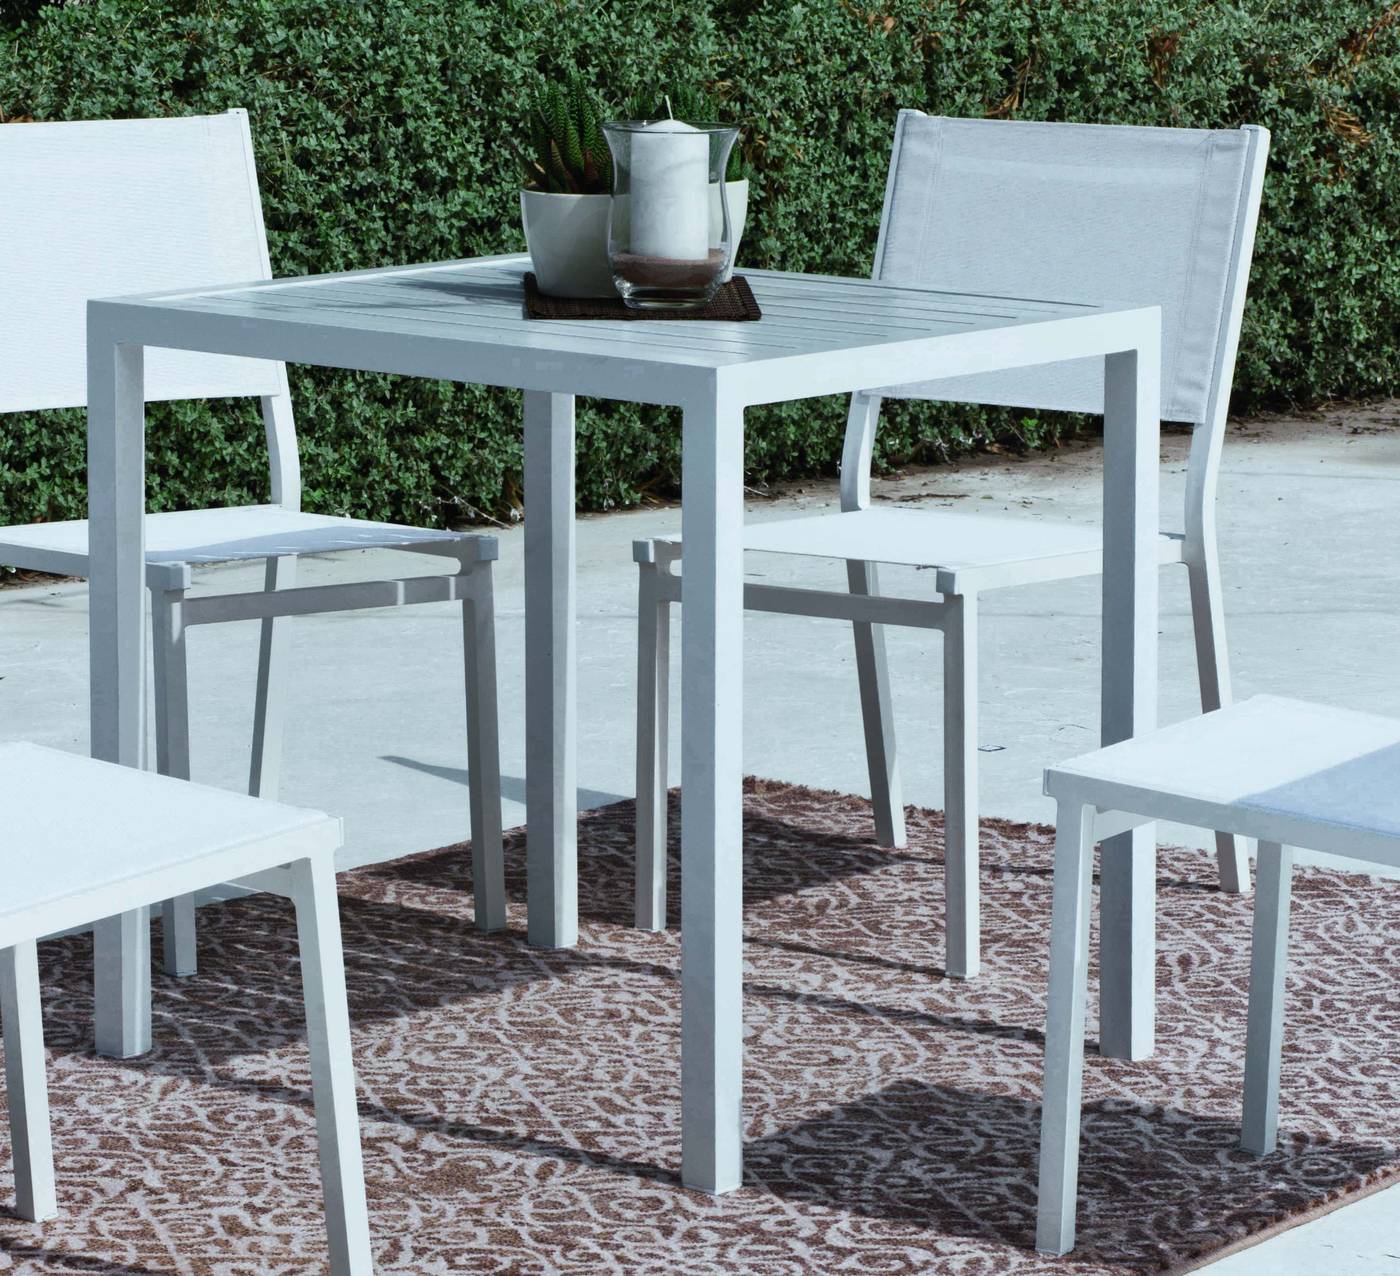 Set Aluminio Melea/Sion-80/4 - Mesa de comedor de 80cm. + 4 sillas. Disponible en color blanco, antracita, champagne, plata o marrón.